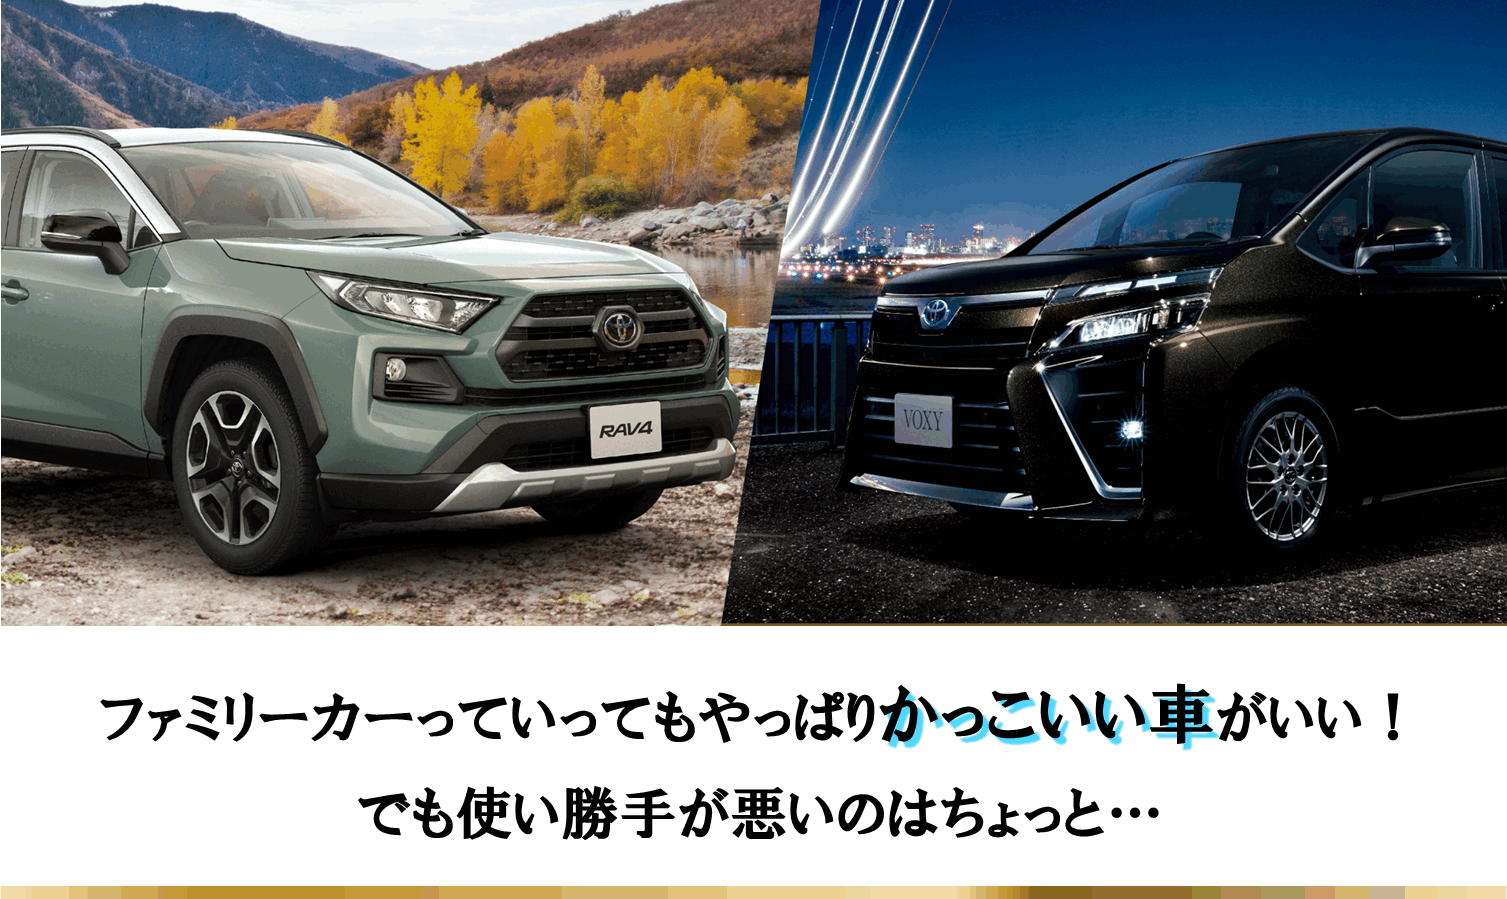 デザインで選ぶ ファミリーカー人気ランキングbest3 ネッツトヨタ愛媛株式会社